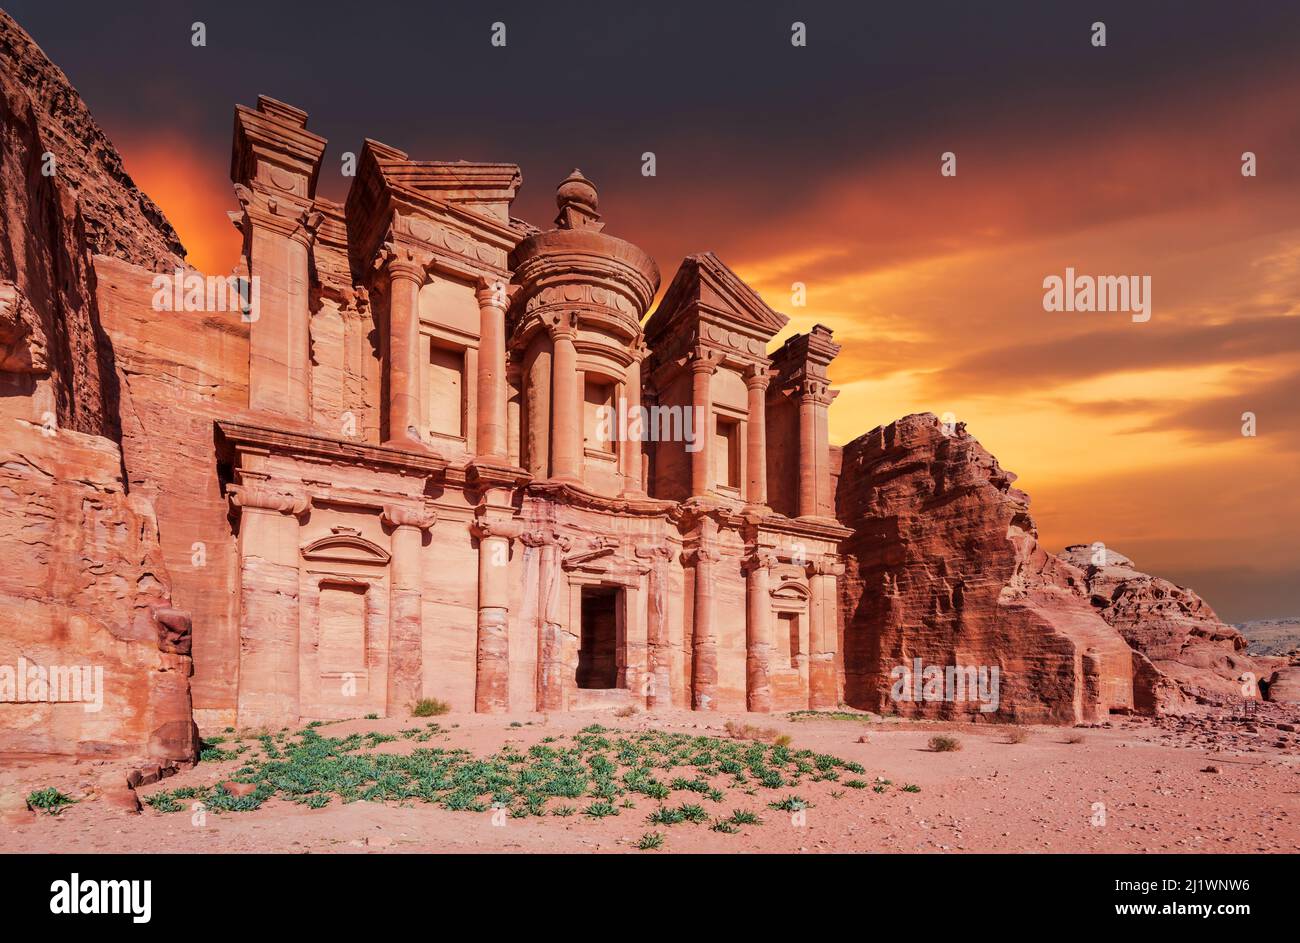 Petra, Jordanie. Ad Deir, le monastère monumental bâtiment sculpté dans la roche dans l'ancienne ville jordanienne de Pétra, moderne Wadi Musa Banque D'Images